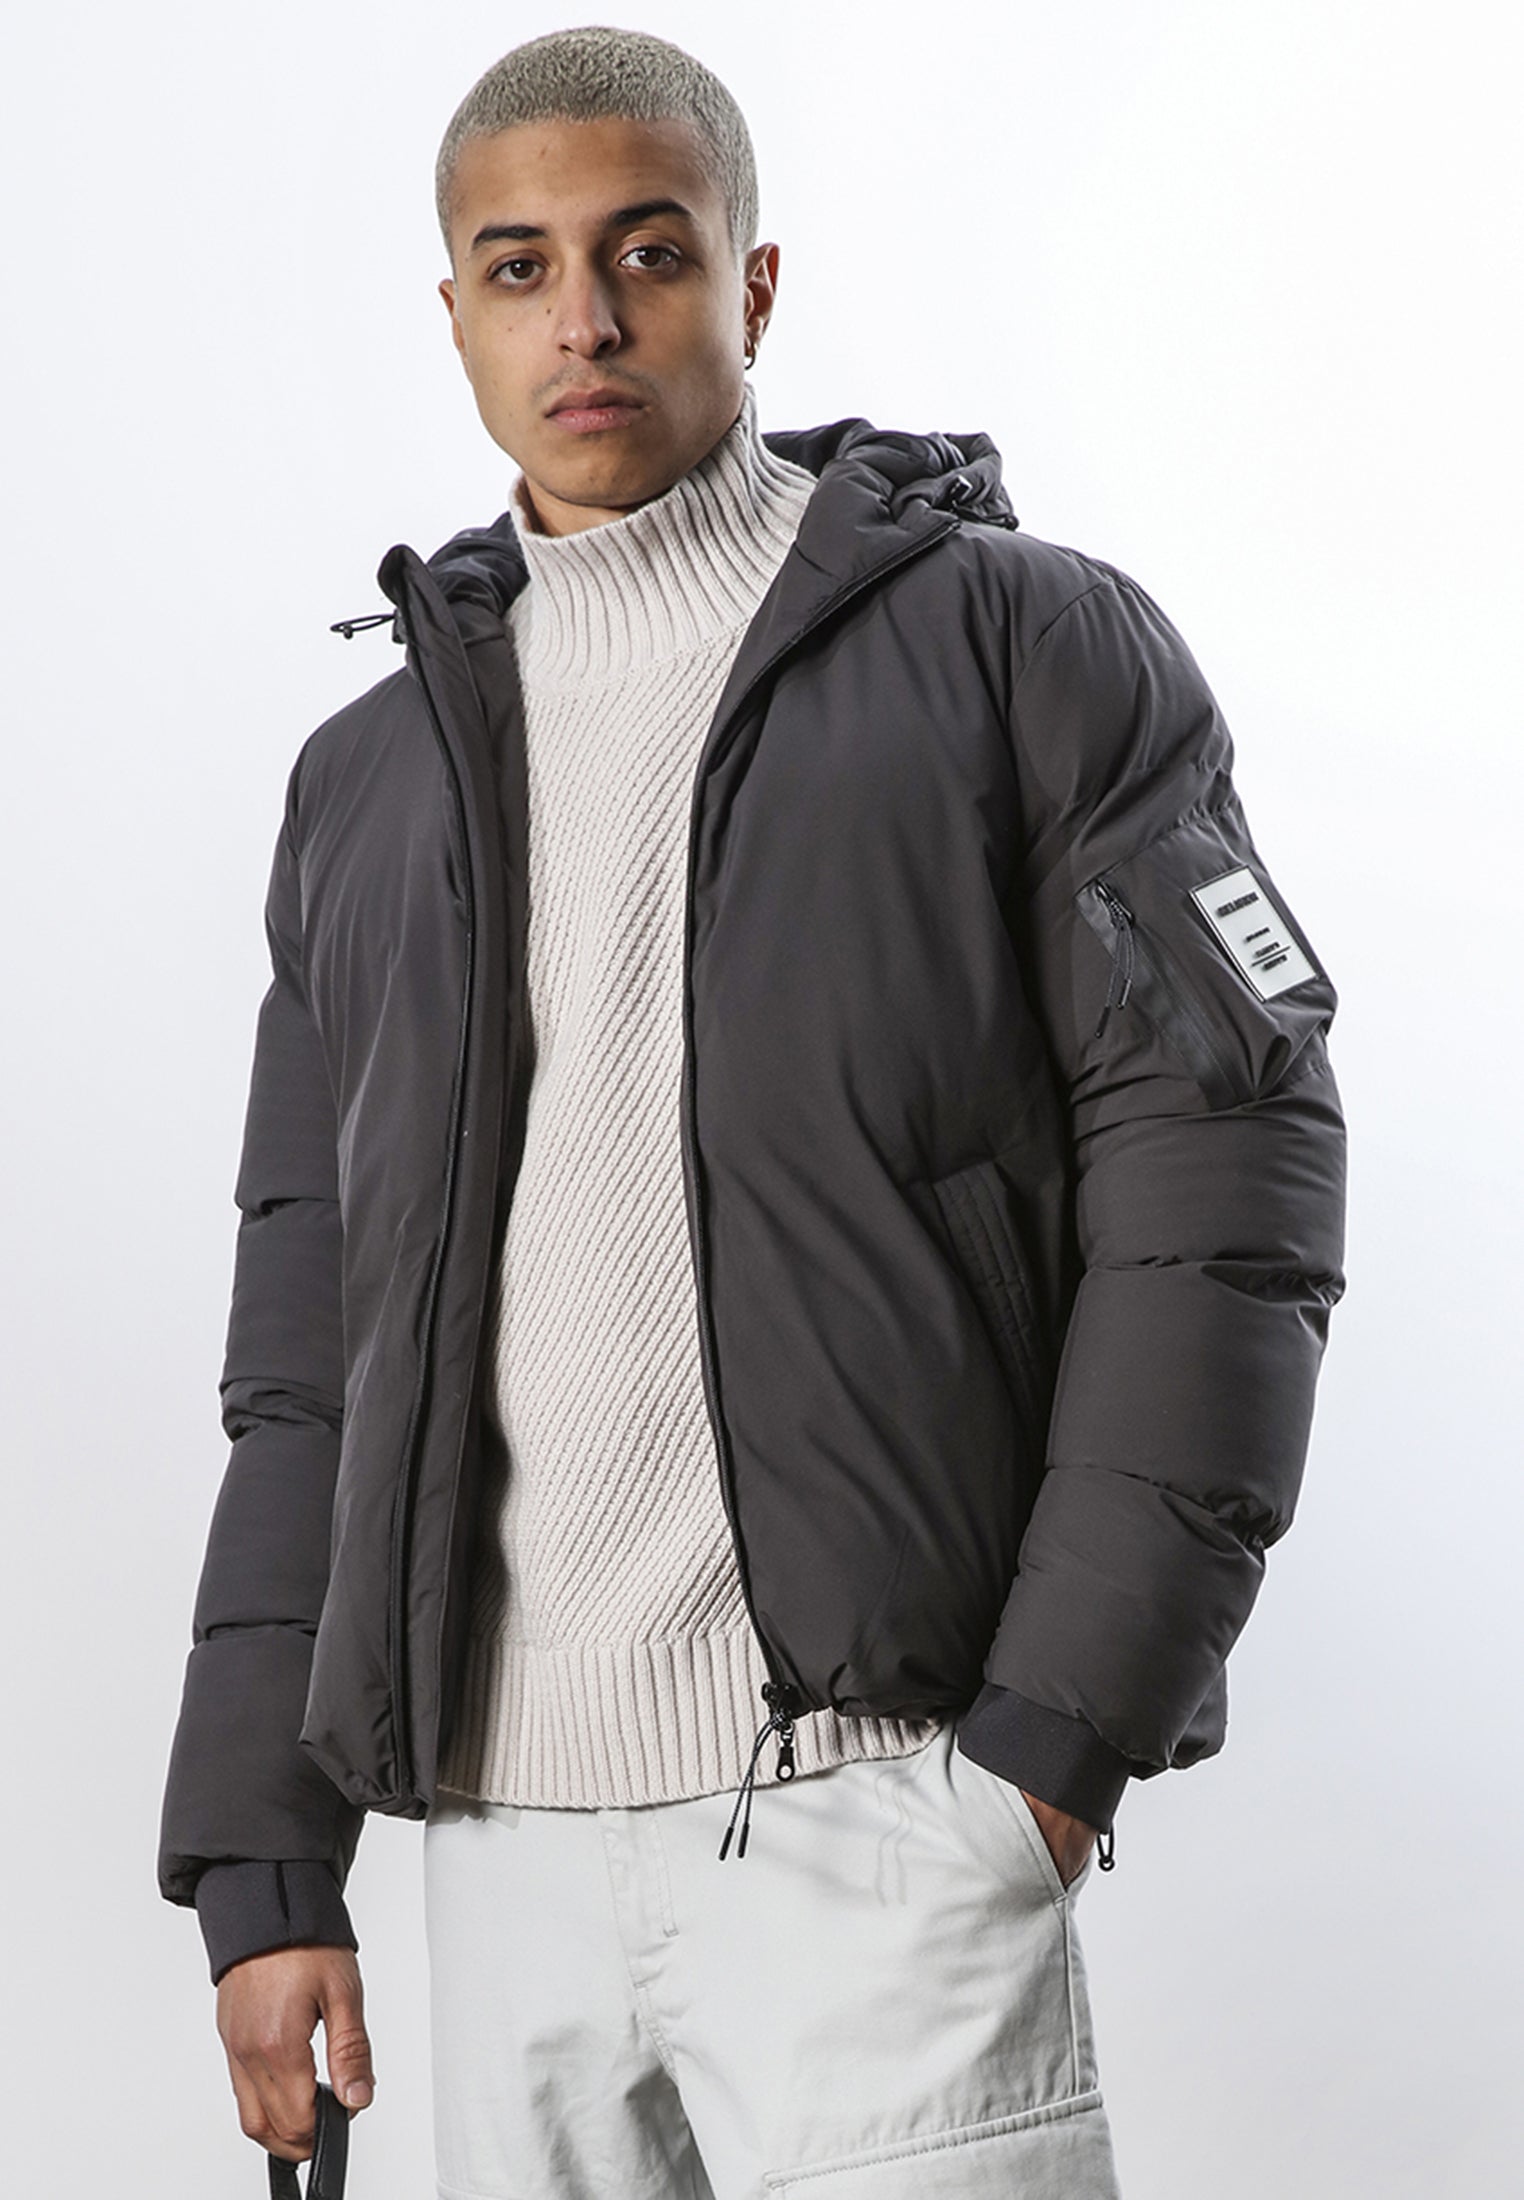 Men's Coats & Jackets - Parkas & Puffer Jackets